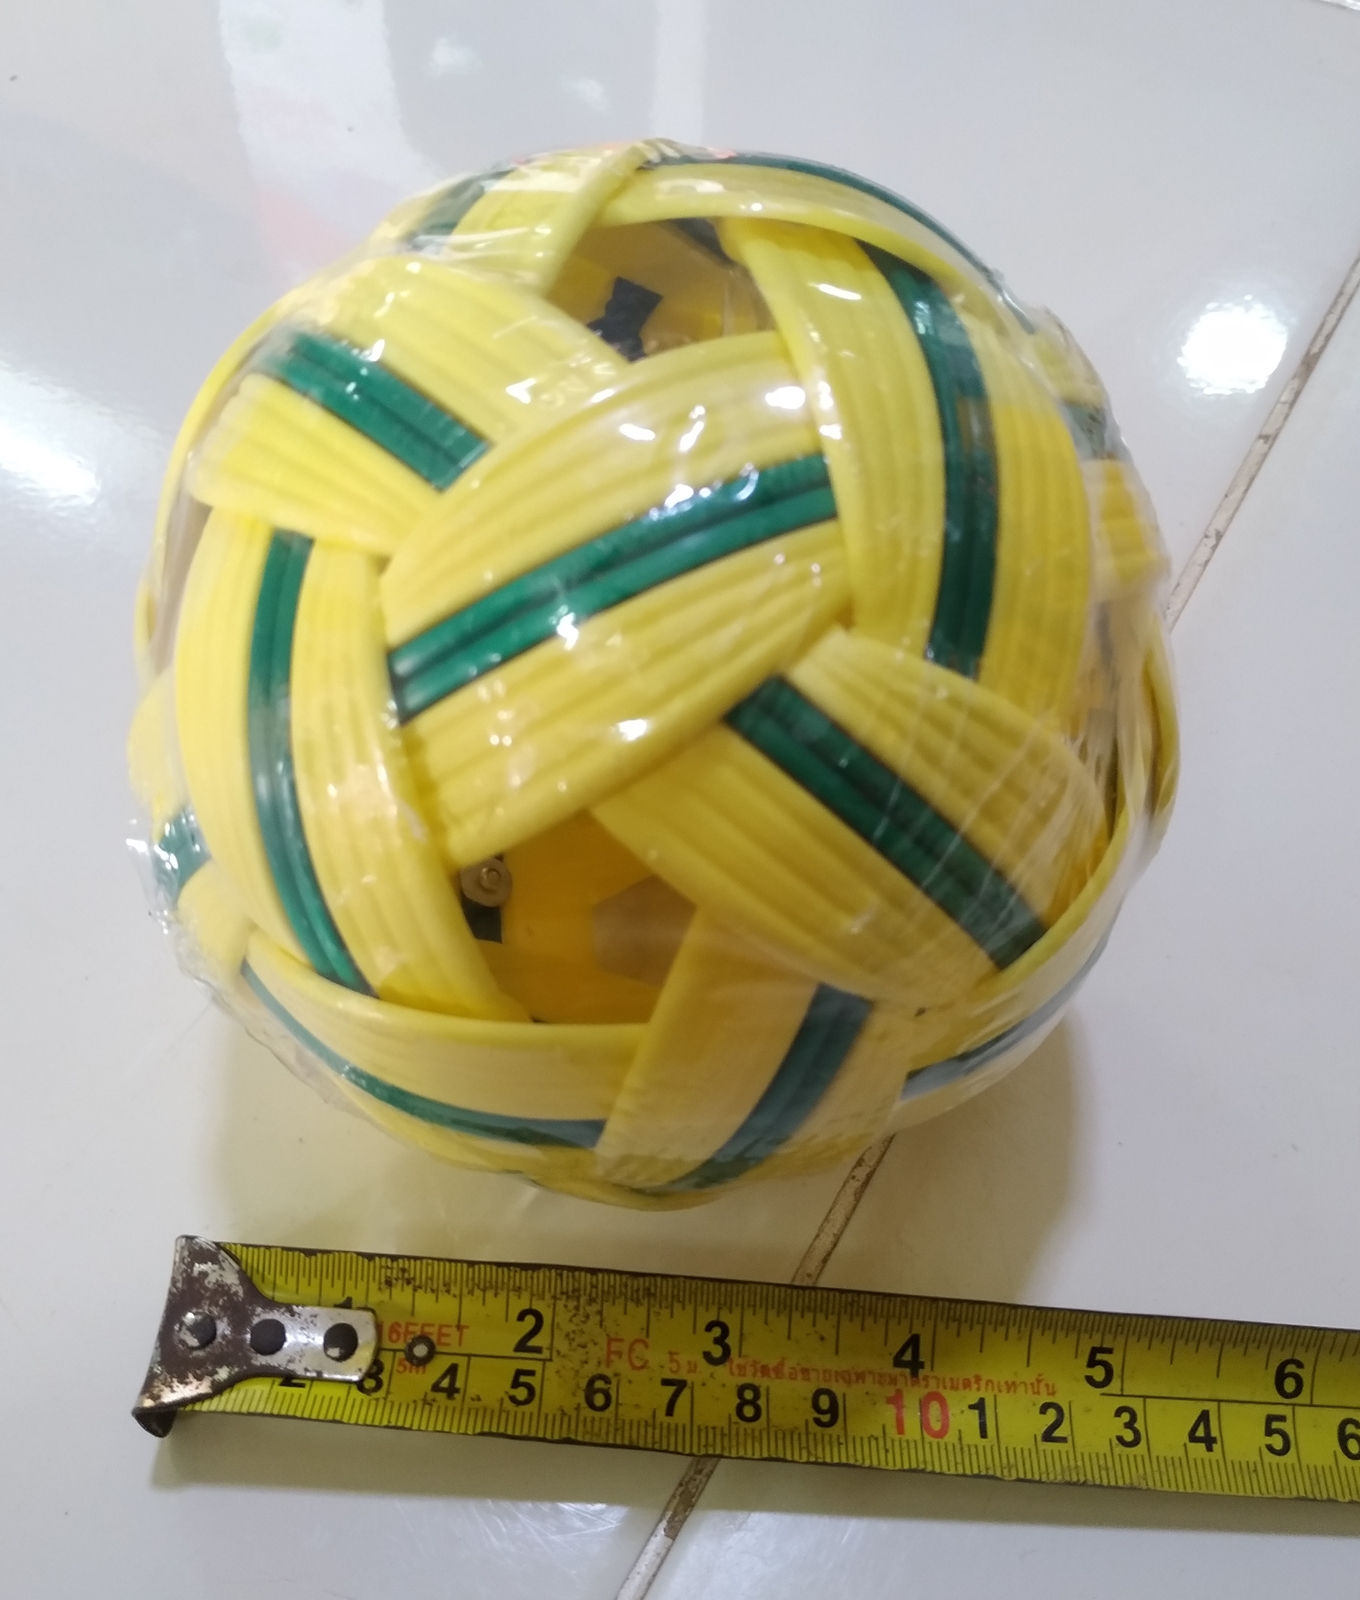 ตะกร้อ Sepak Takraw ลูกตะกร้อ (สีน้ำตาล/สีเขียว) อุปกรณ์กีฬา rattan ball takraw ตะกร้อพลาสติก ตะก้อ